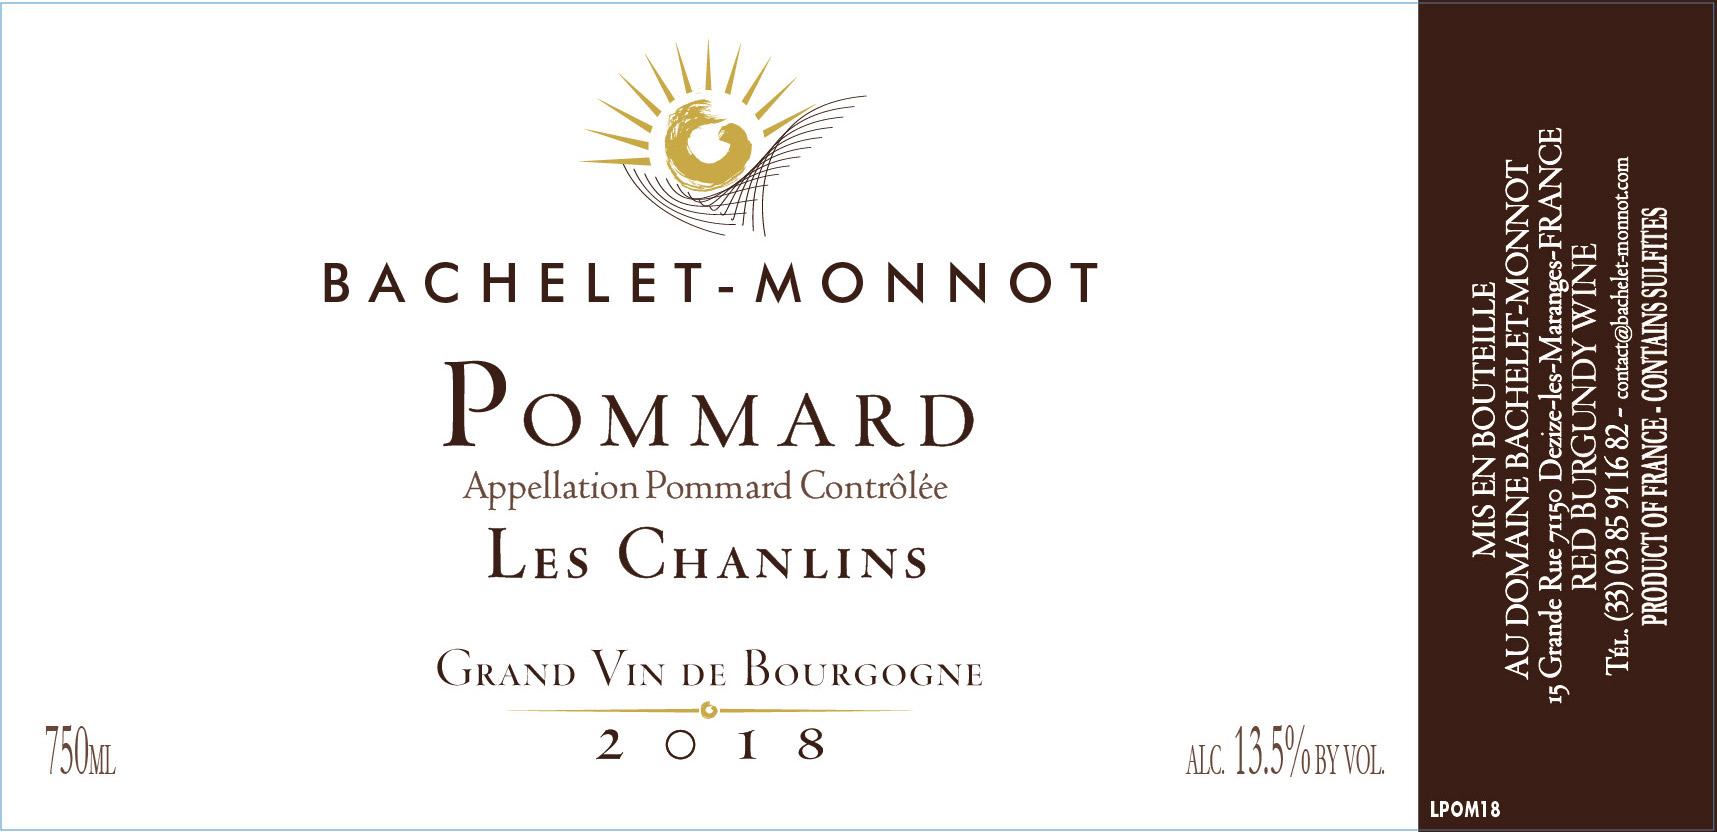 https://www.skurnik.com/wp-content/uploads/2018/07/pommard-les-chanlins-bachelet-monnot.jpg